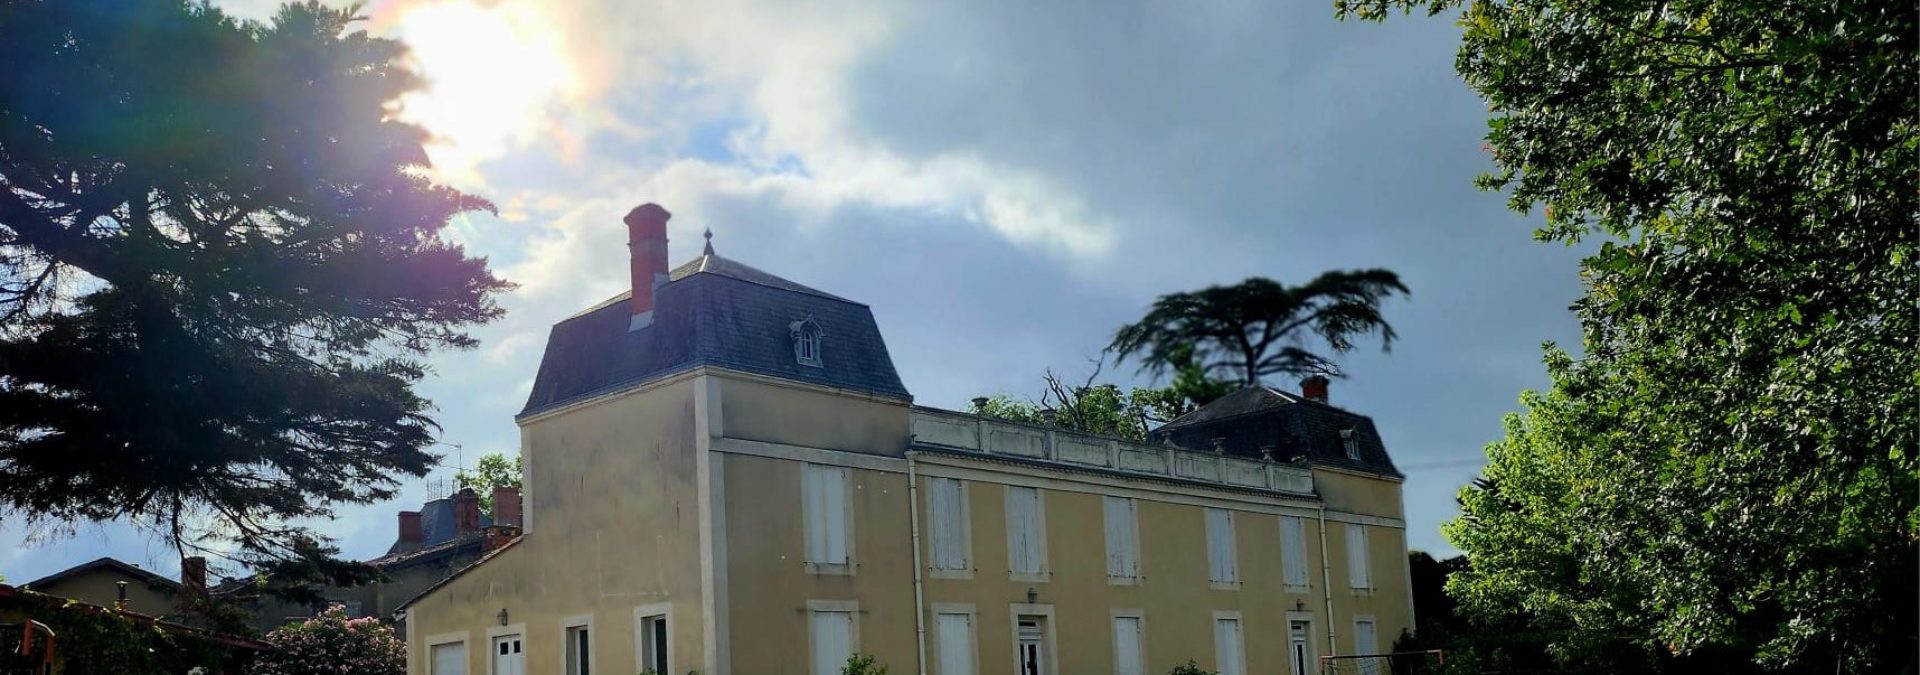 Vignobles Darriet – Chateau Dauphiné Rondillon